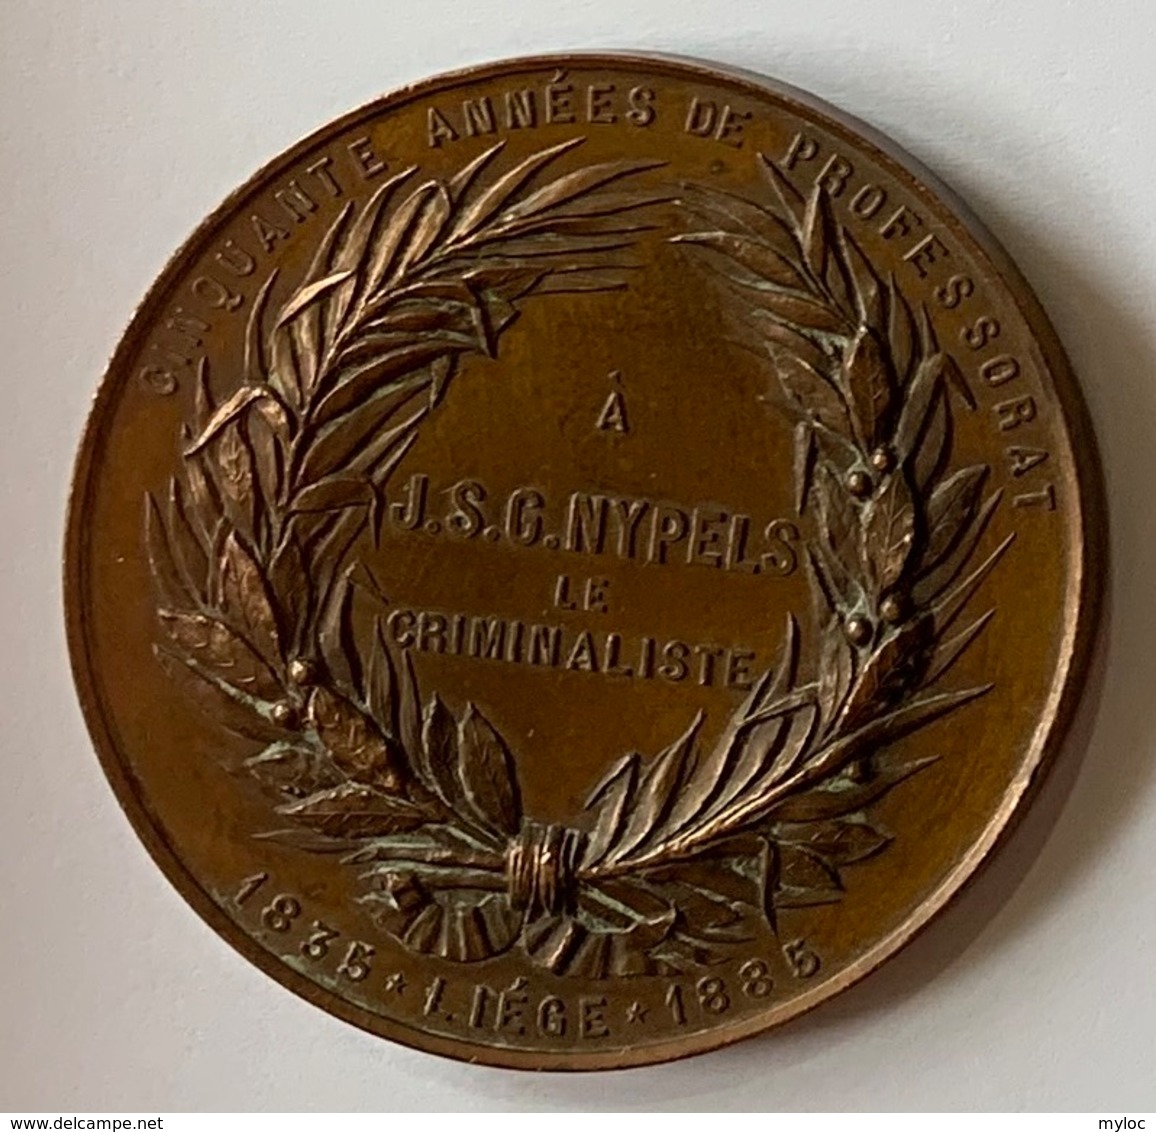 Médaille Bronze. Professeur J.S.G. Nypels. Criminalliste. Cinquante Années De Professorat. Liège 1835-1885. E. Geerts. - Unternehmen